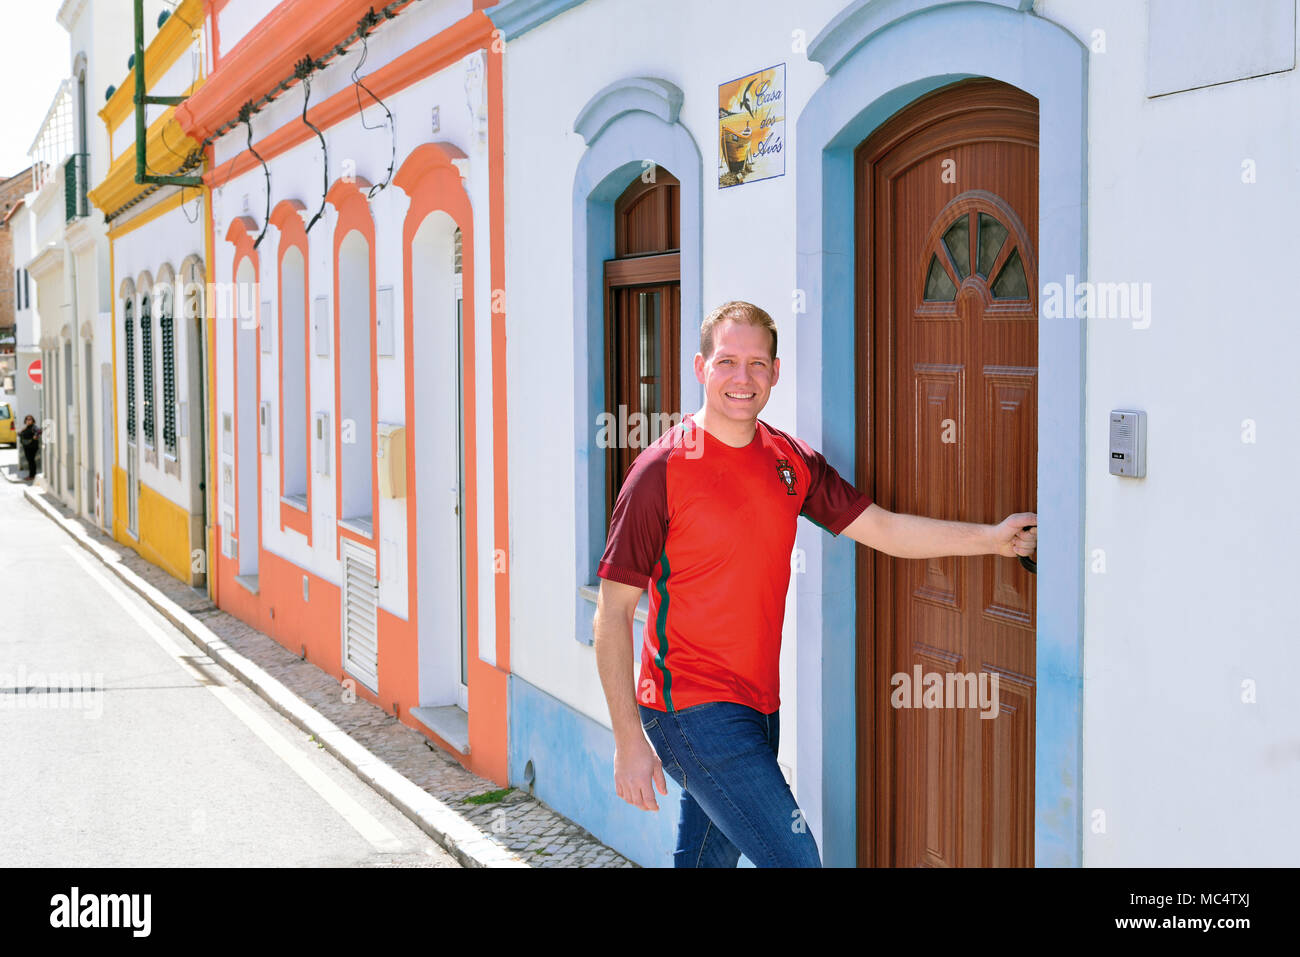 Il giovane portoghese con National Soccer team shirt entrando in una casa tipica a Tavira Foto Stock